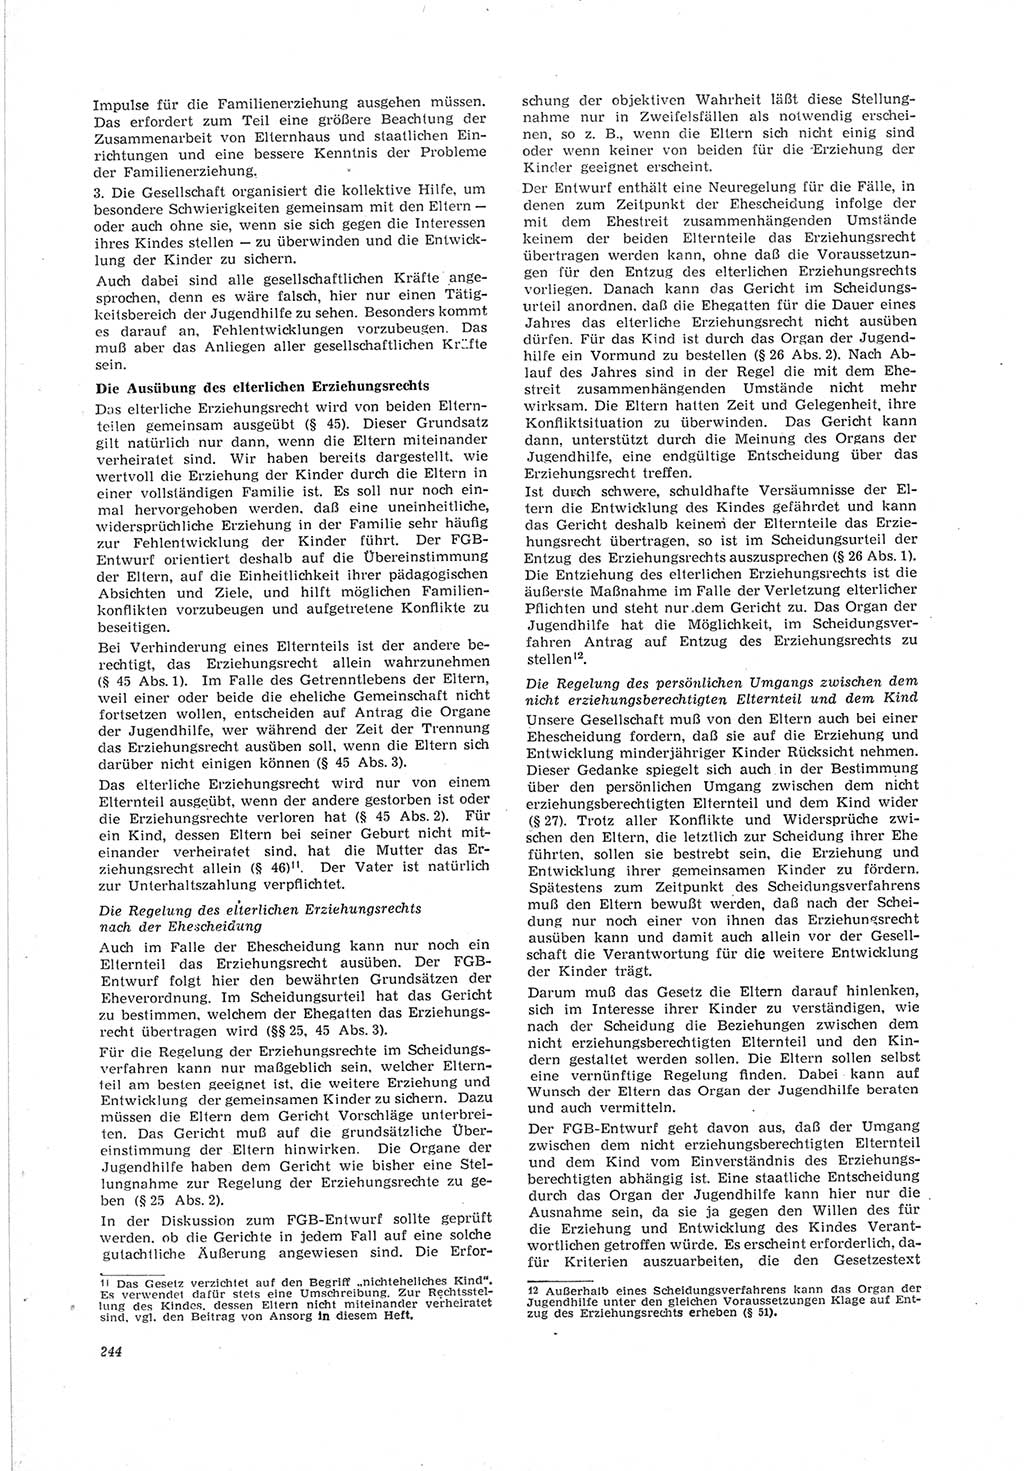 Neue Justiz (NJ), Zeitschrift für Recht und Rechtswissenschaft [Deutsche Demokratische Republik (DDR)], 19. Jahrgang 1965, Seite 244 (NJ DDR 1965, S. 244)